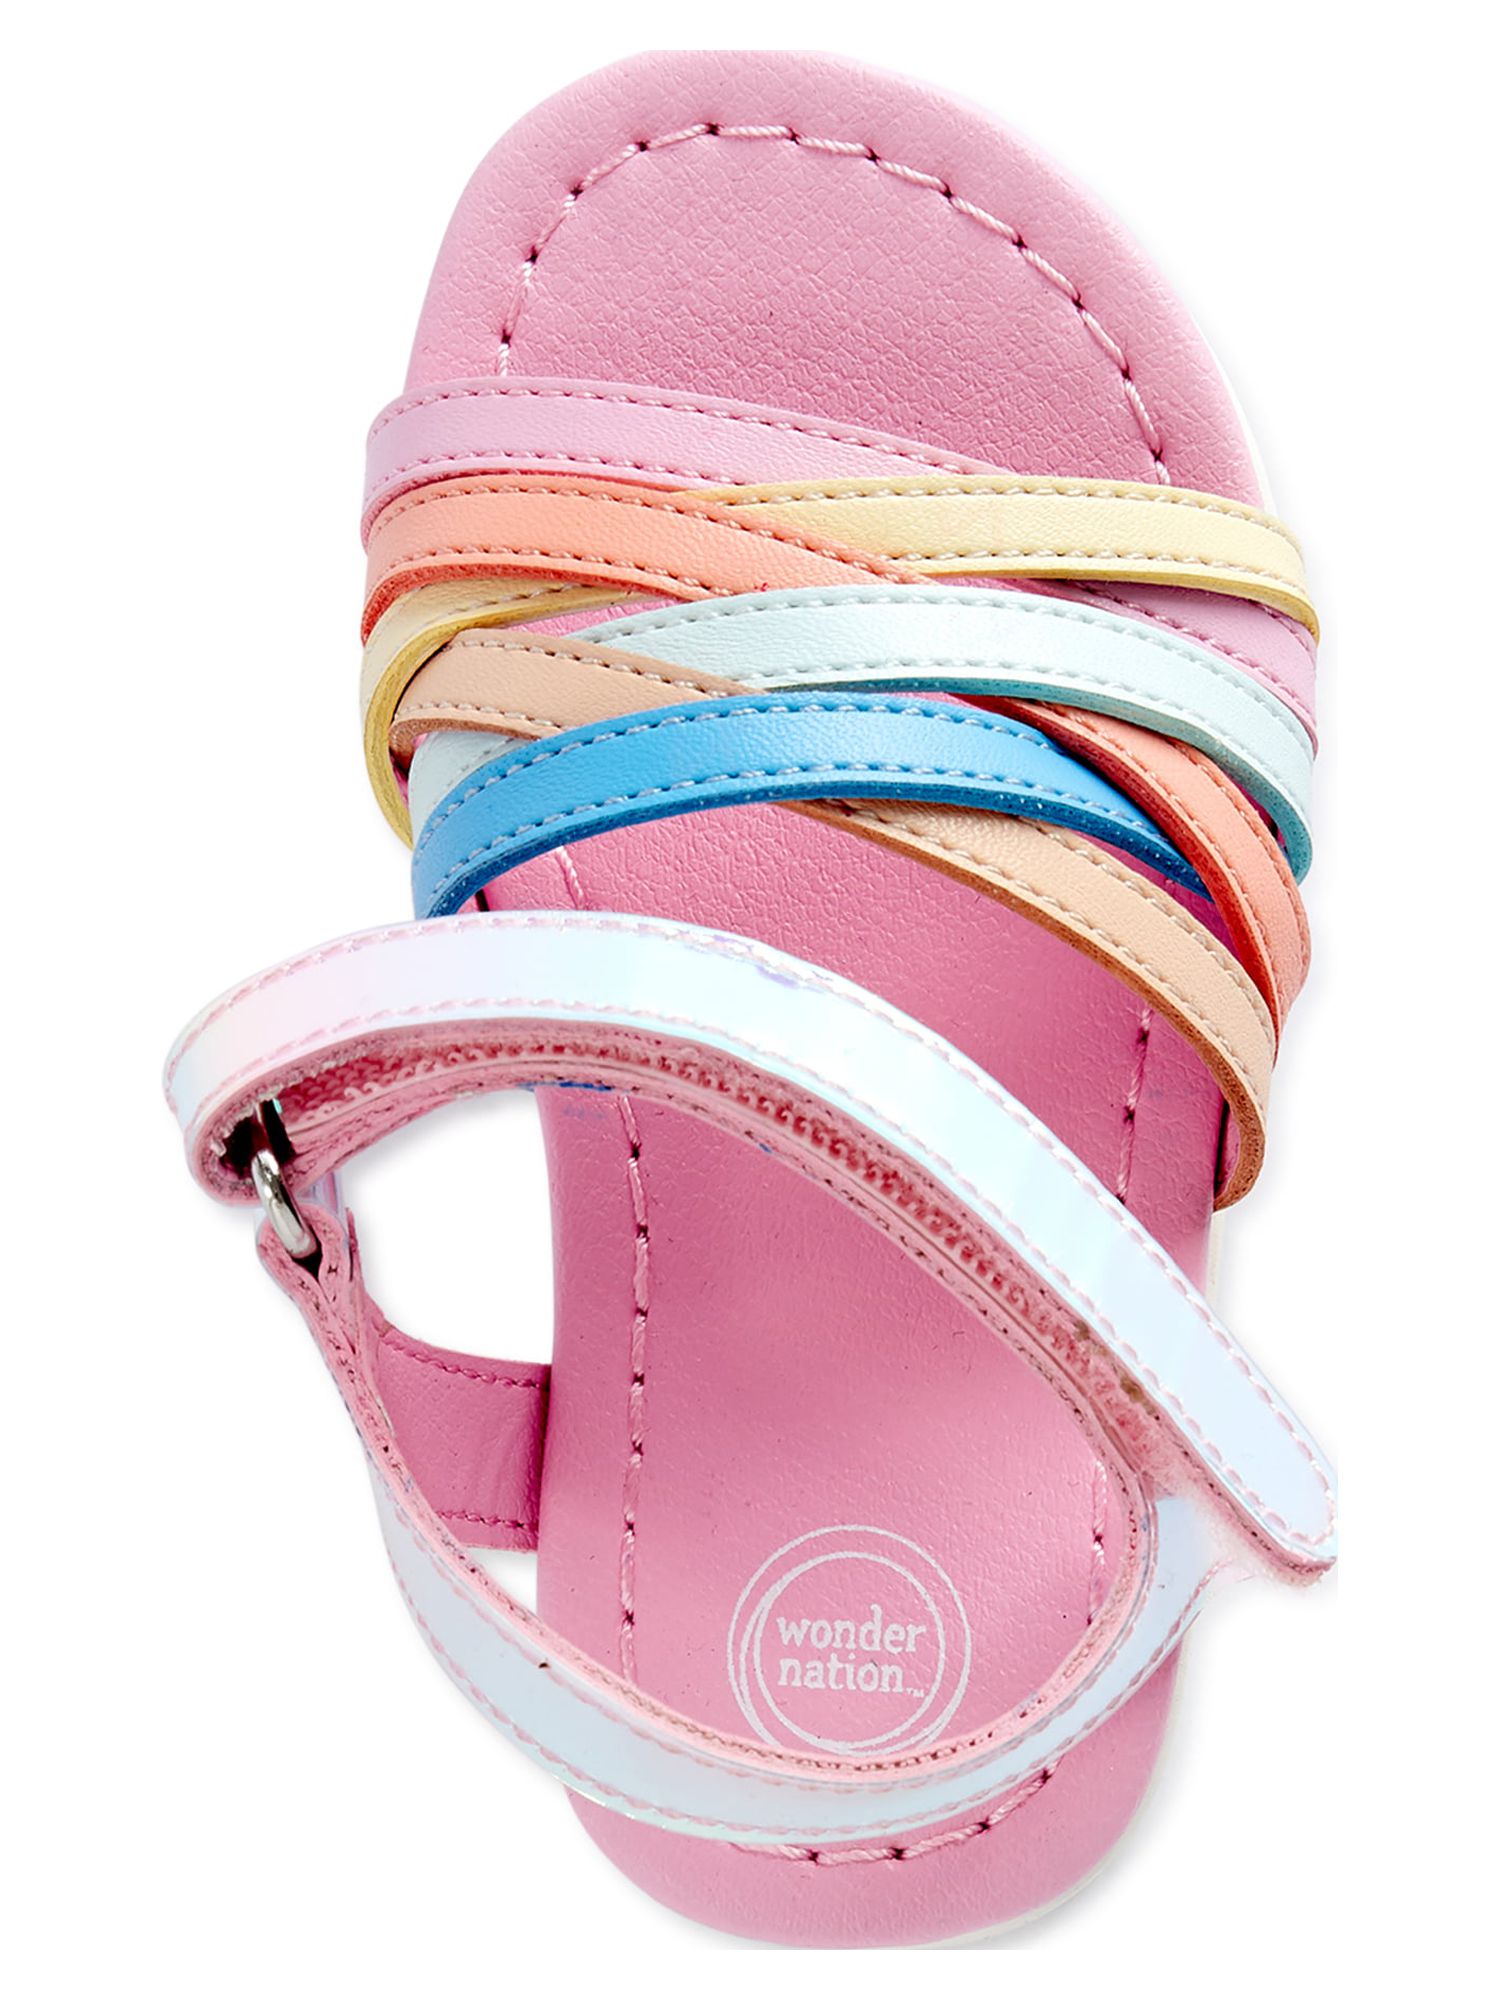 Wonder Nation Infant Girls Huarache Sandals - image 5 of 7